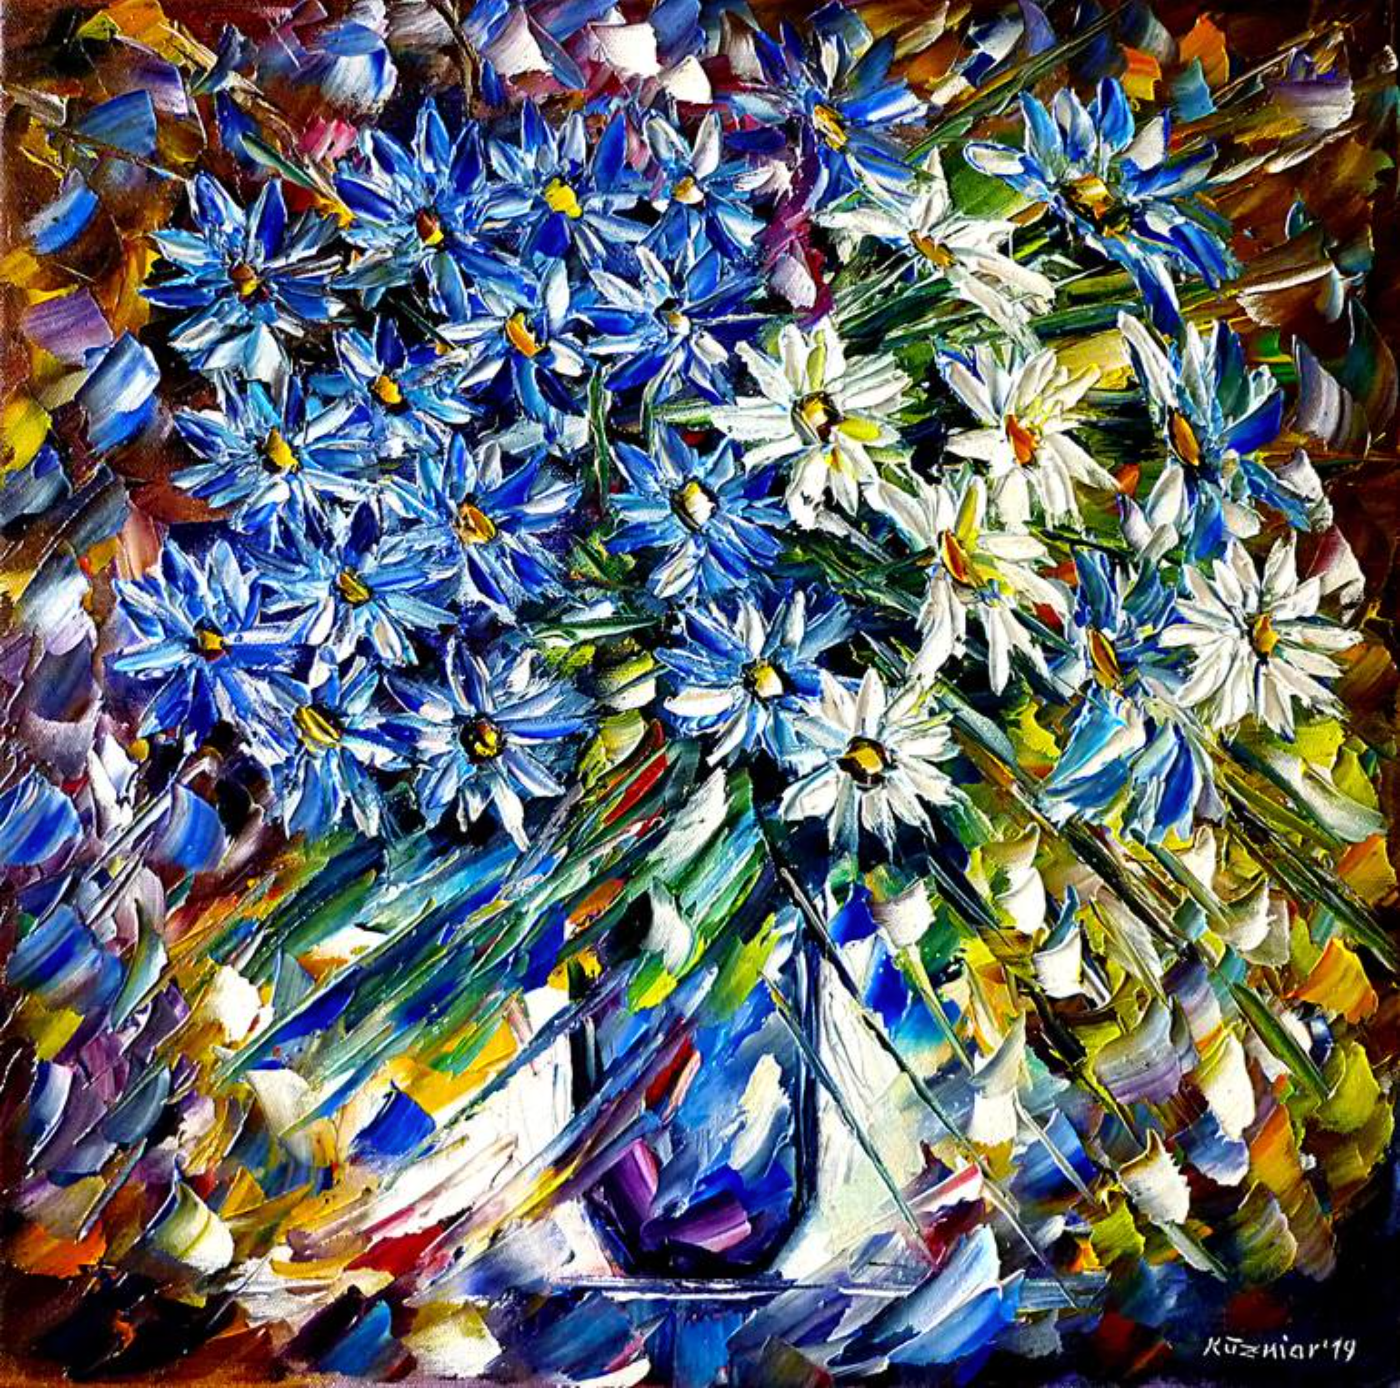 Mirek Kuzinar Malerei blaue und weiße Blumen in einer blauen Vase expressionistisch